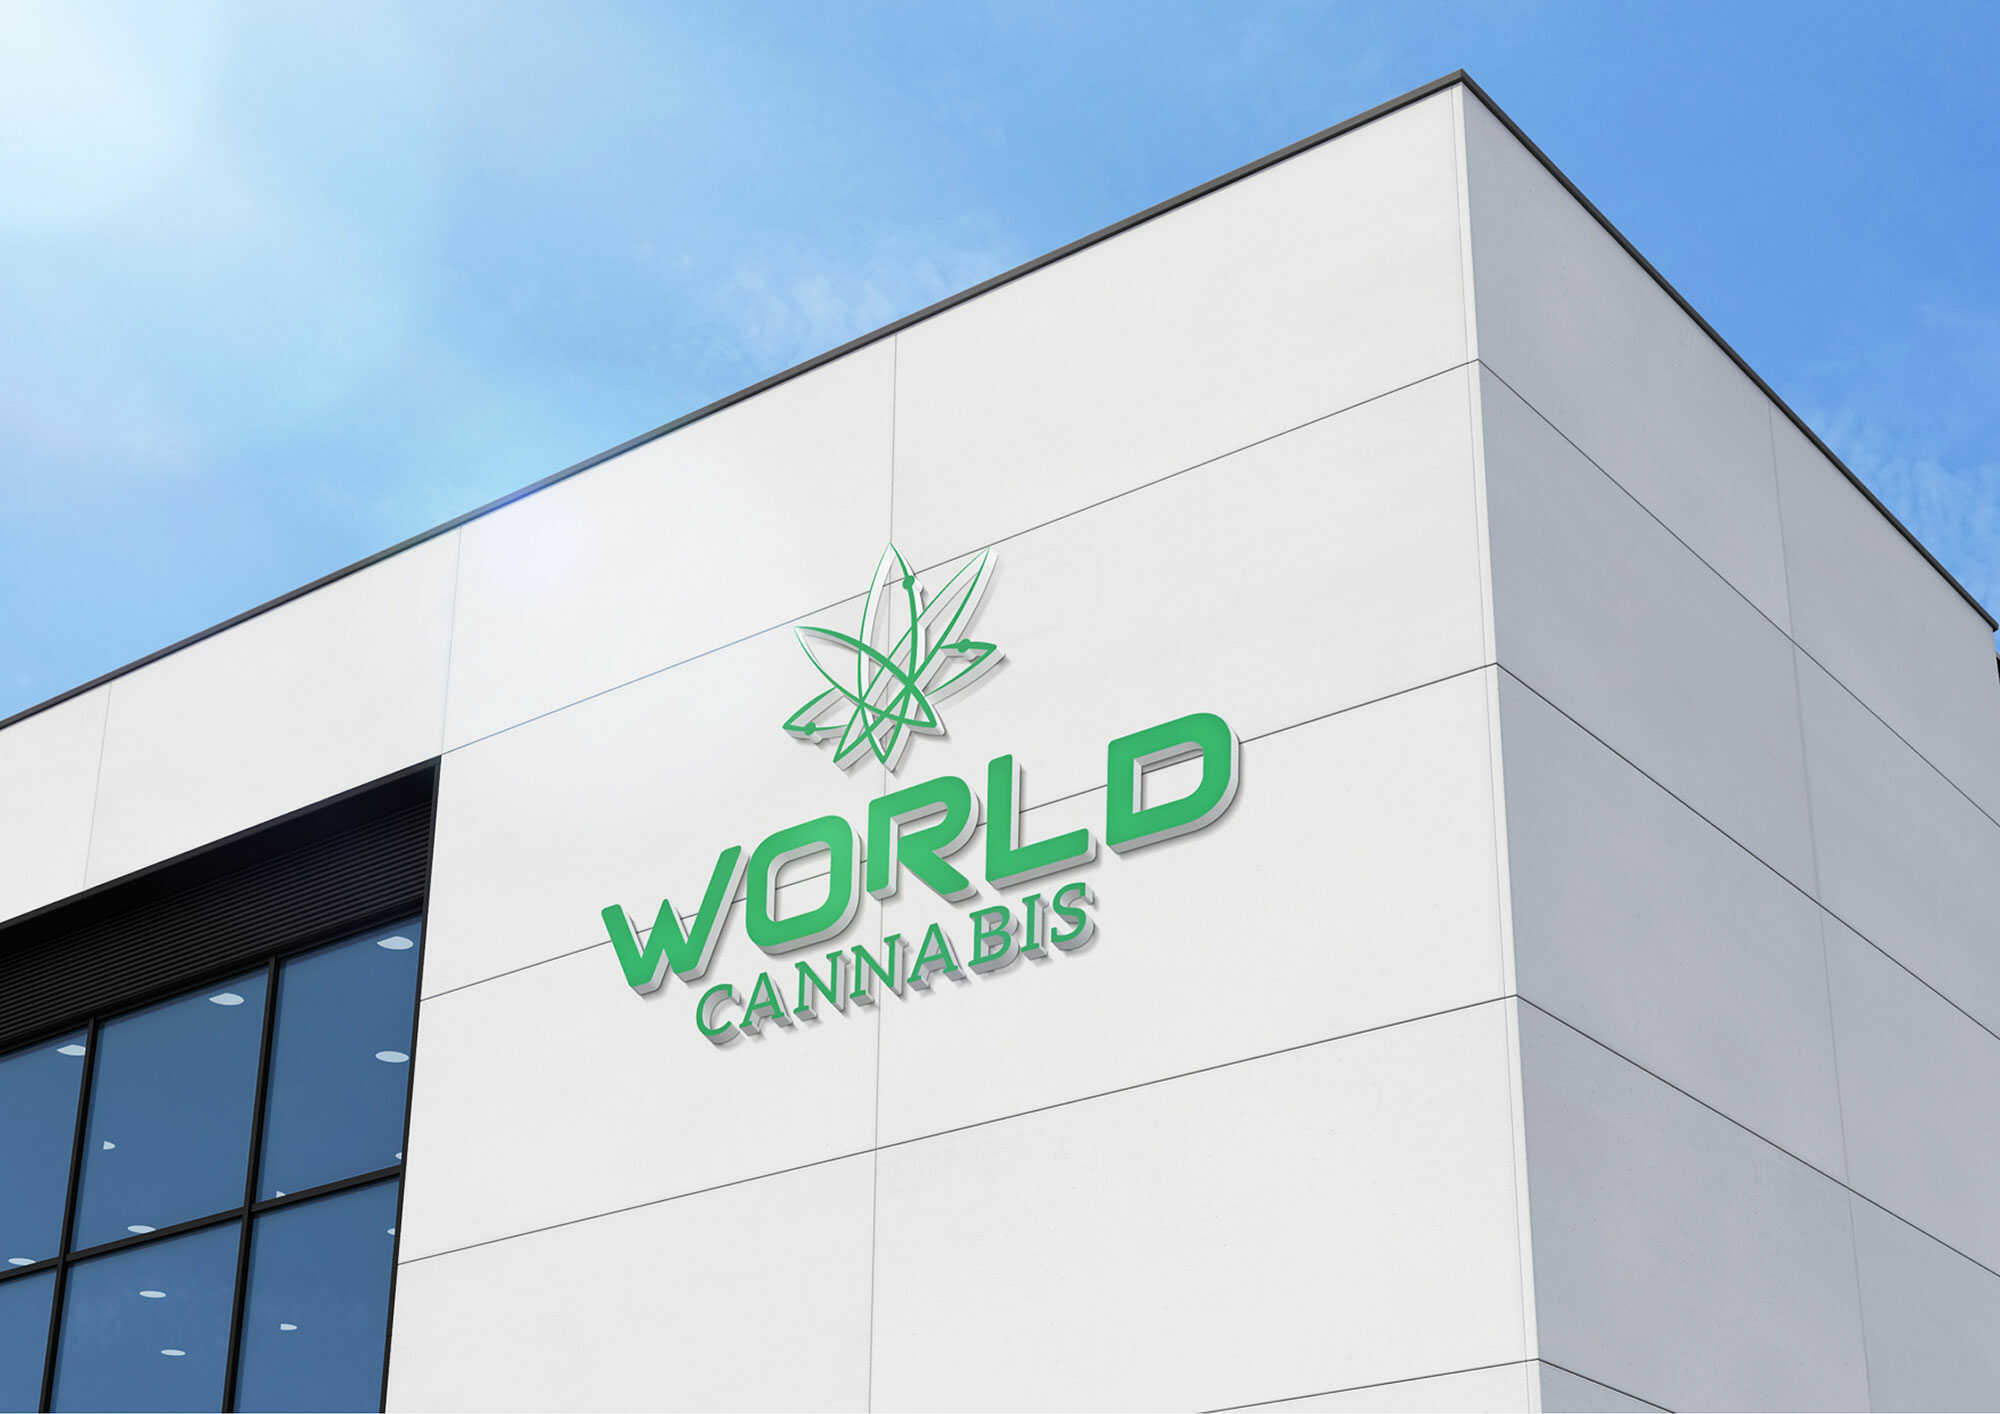 Cliente: World Cannabis